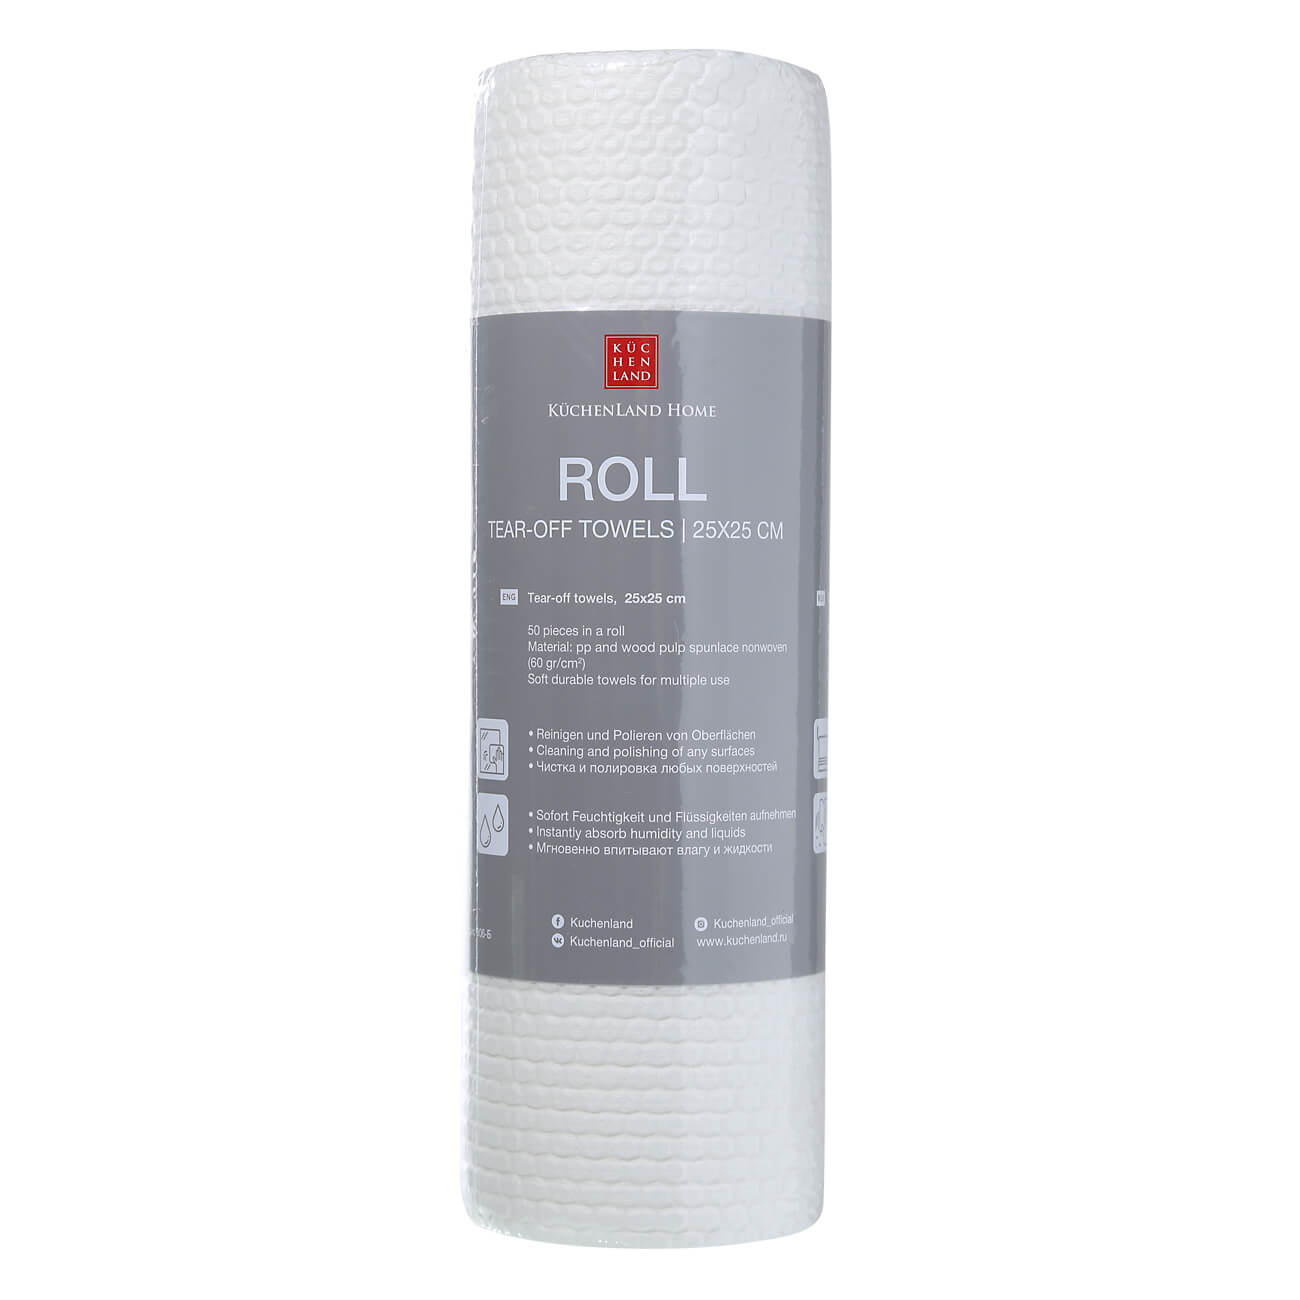 Полотенца рулонные, 25х25 см, 50 шт, белые, Roll